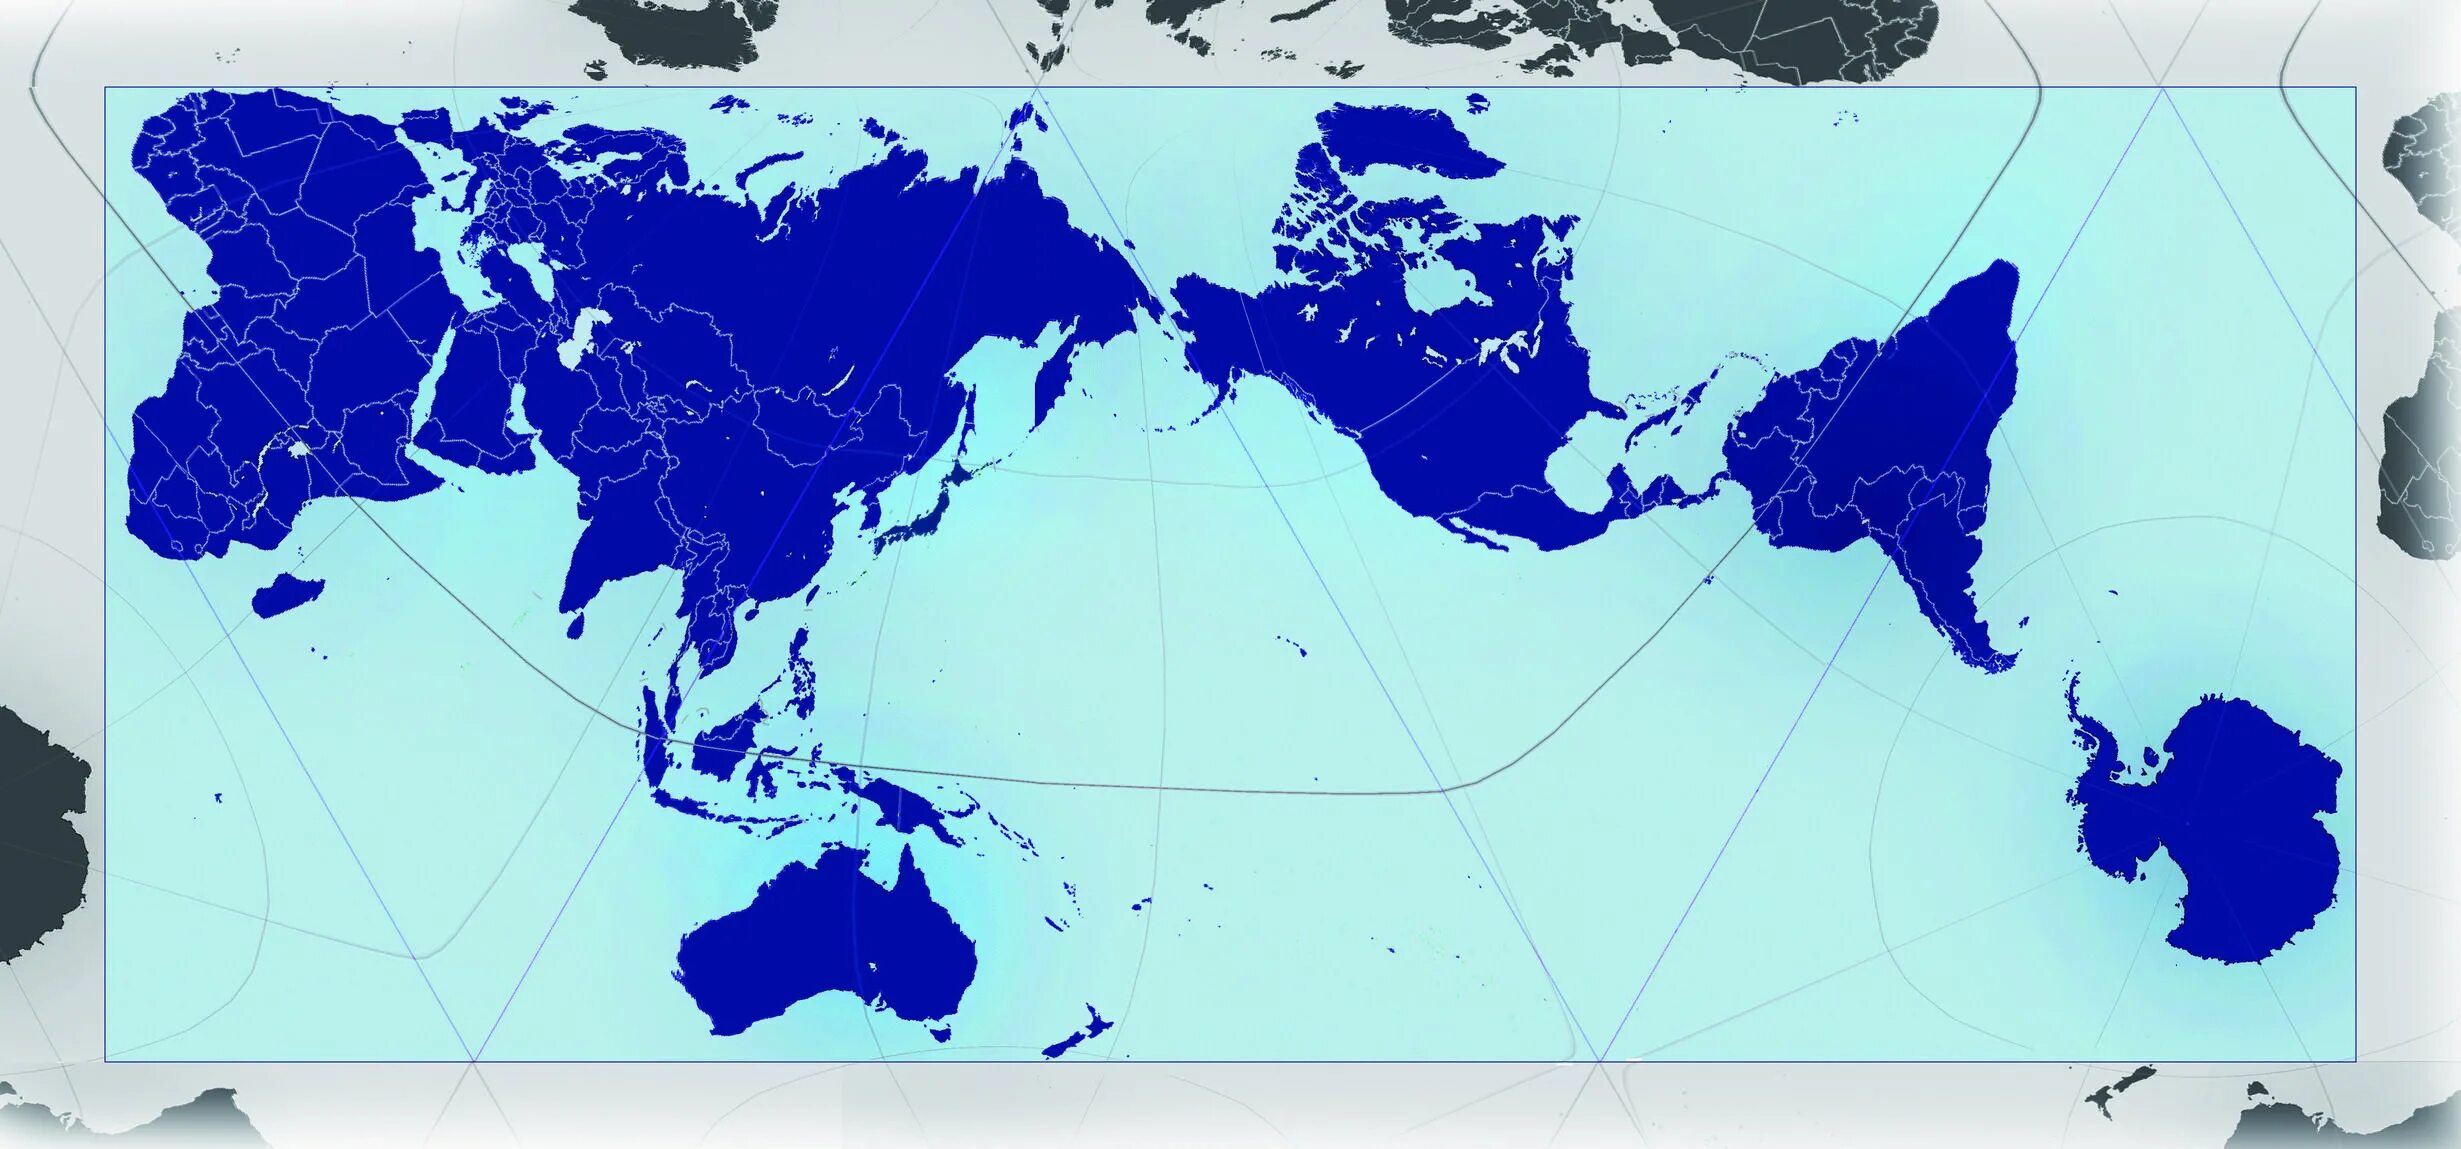 Правильная карта. Карта мира Authagraph. Японская карта мира без искажений. Самая правильная карта мира.